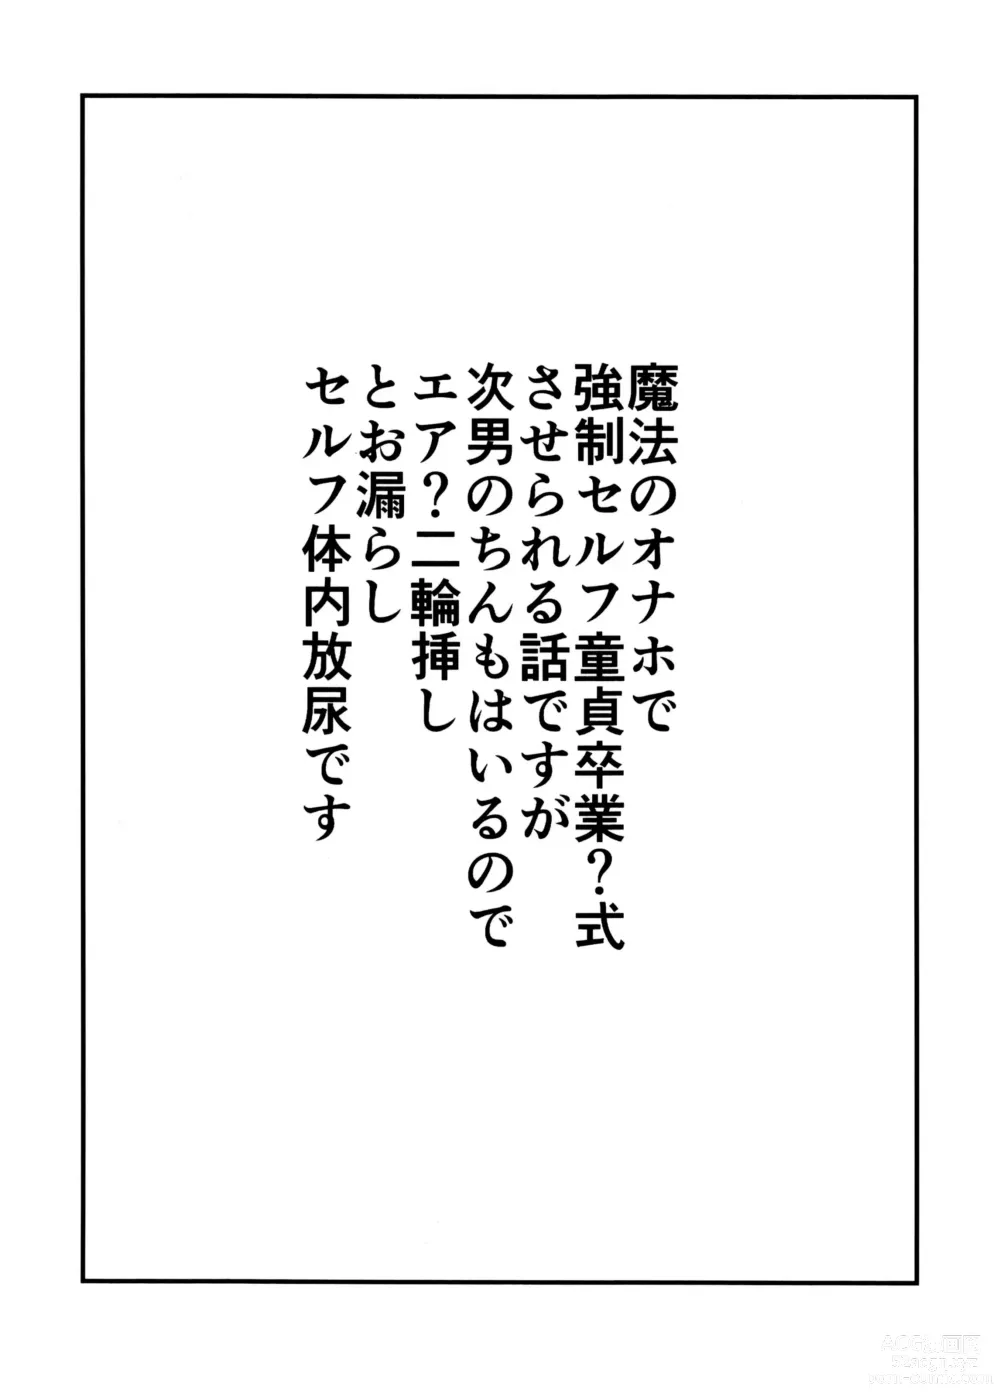 Page 2 of doujinshi Guchuguchu Nuchinuchu Mahou no Doppyun Onaho de Sotsugyou